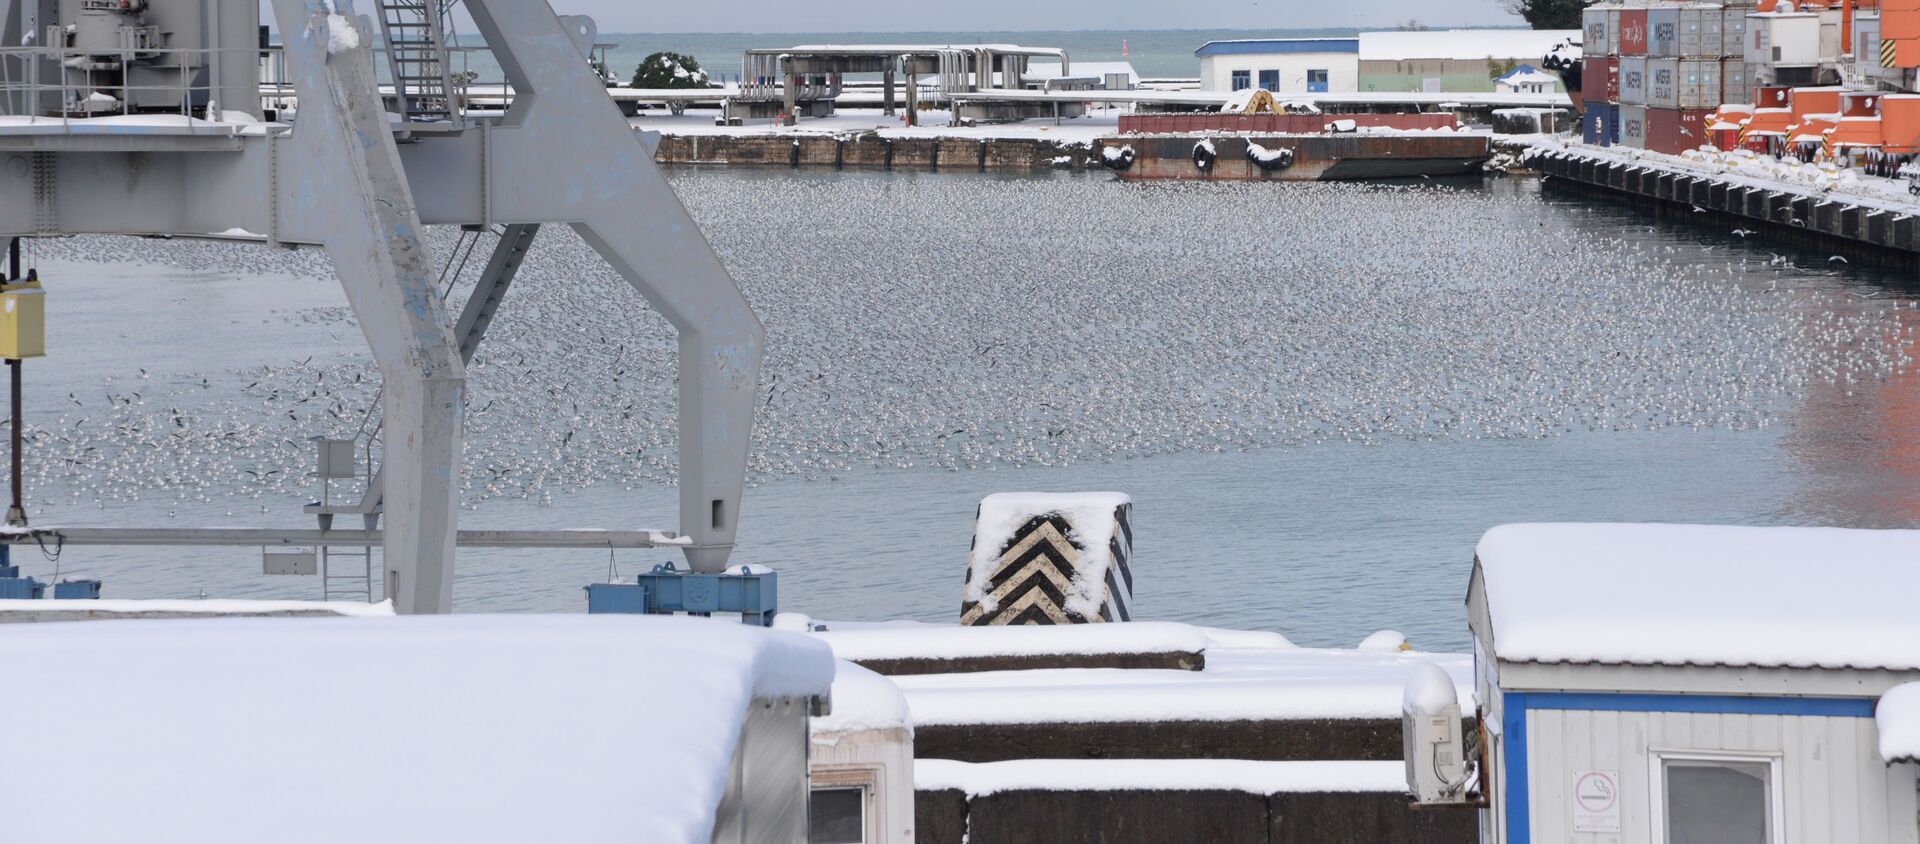 Батуми в снегу зимой - Батумский морской порт - Sputnik Грузия, 1920, 22.01.2021